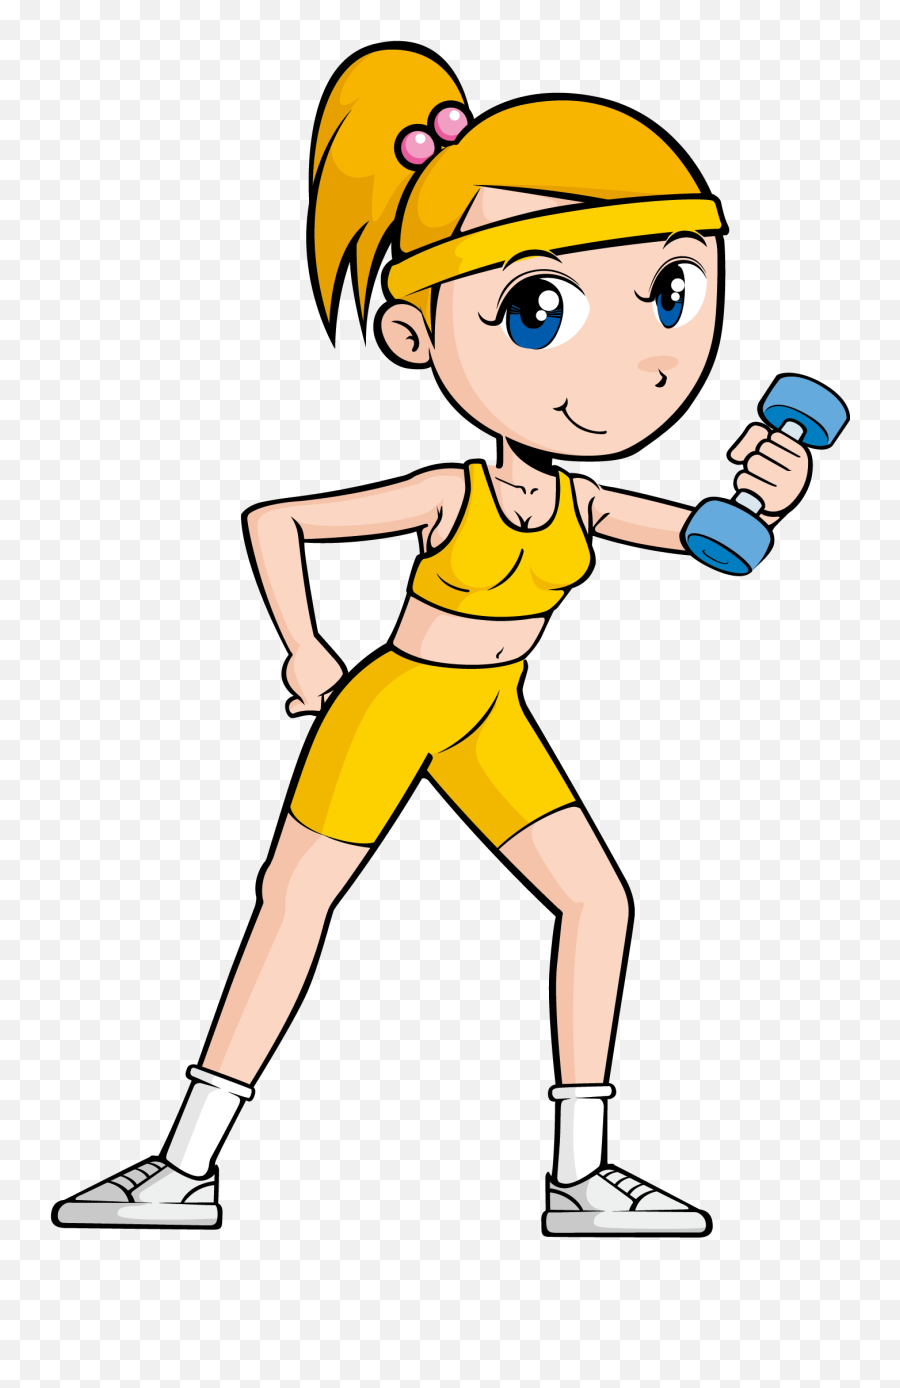 Clipart Exercise Arm Exercise Clipart - Exercise Physical Fitness Cartoon Emoji,Emoji Bike And Arm